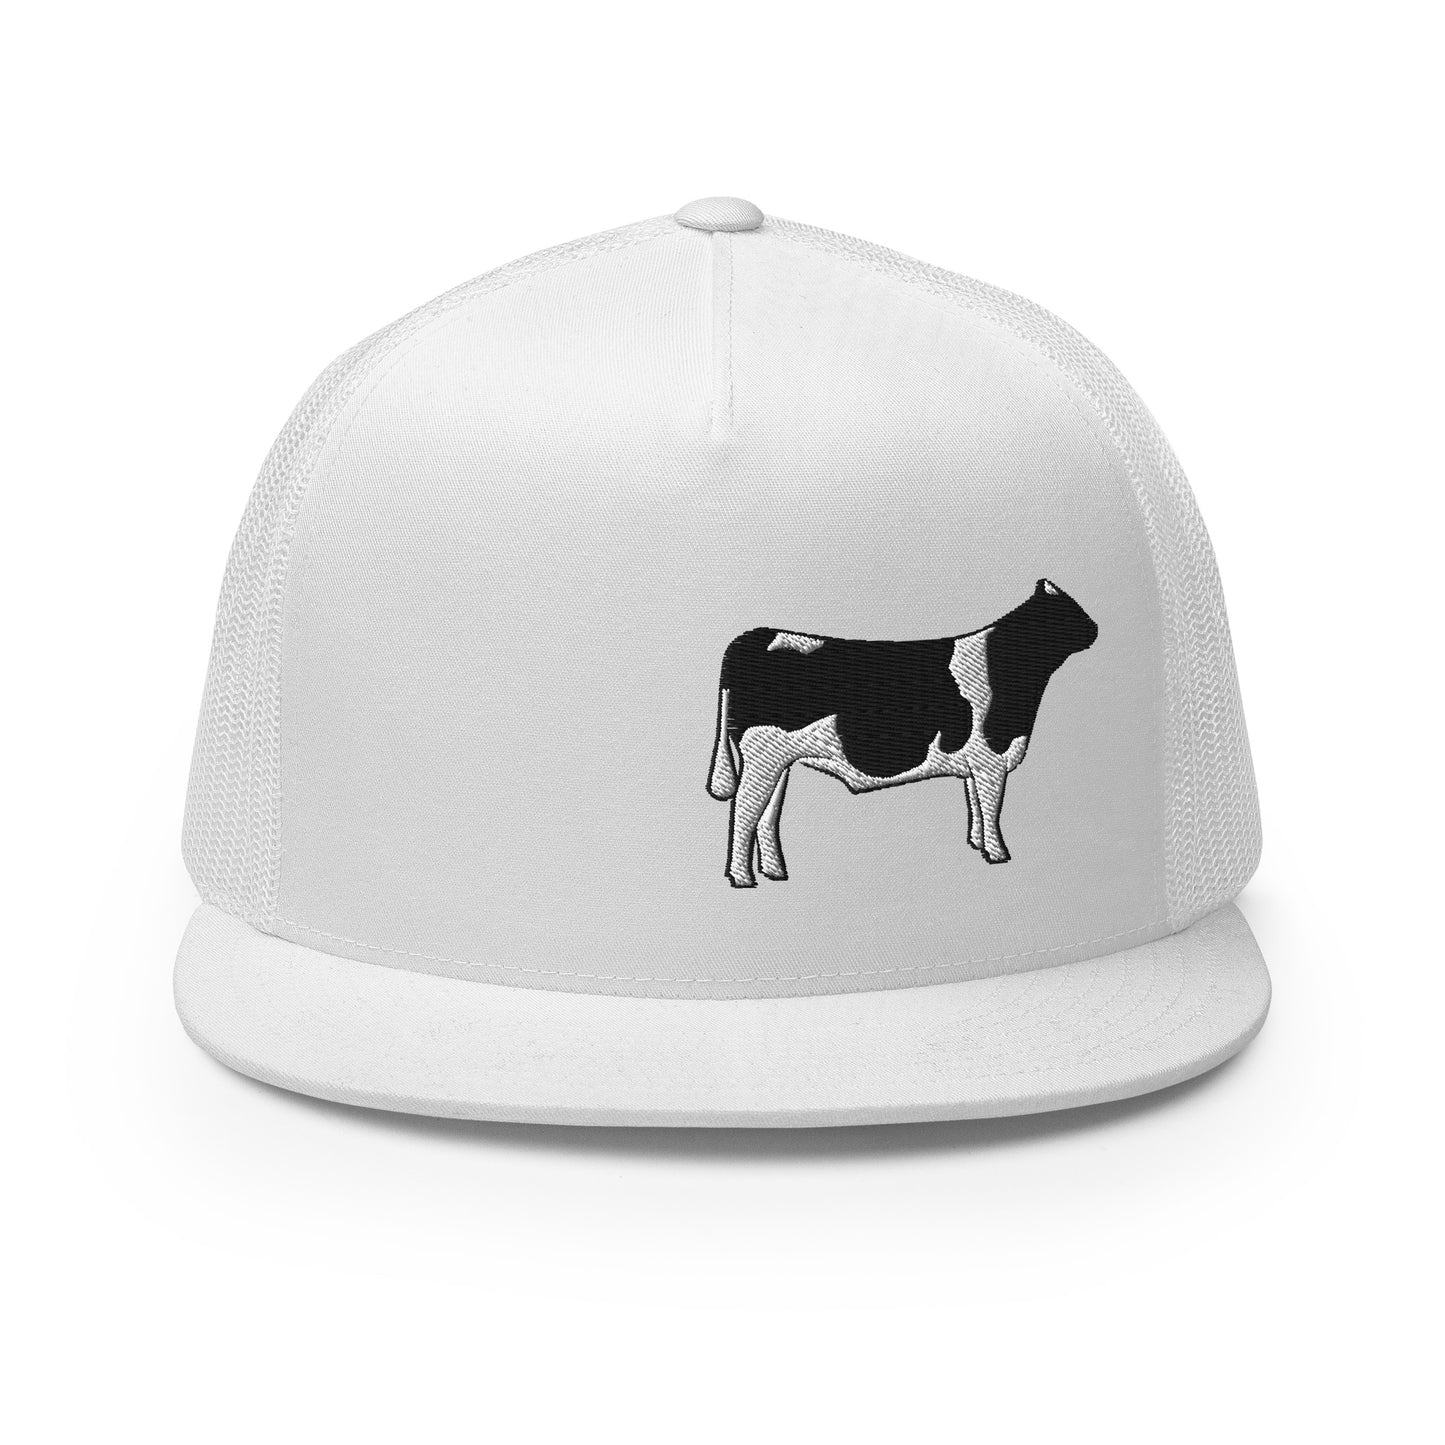 Dairy steer Trucker Cap| hat